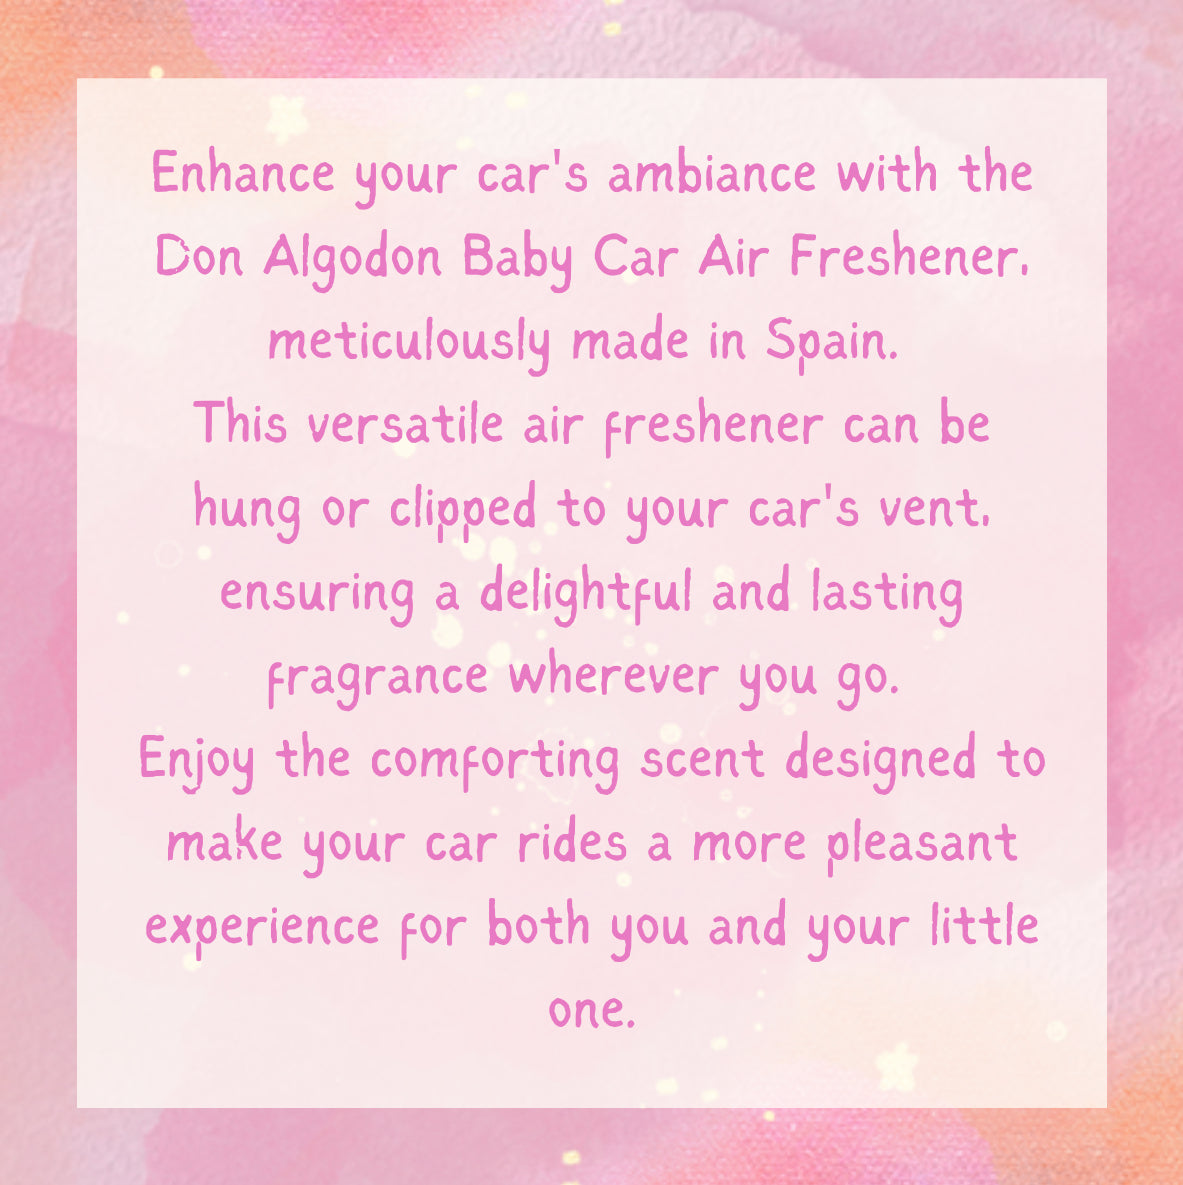 Don Algodon BABY Car Air freshener